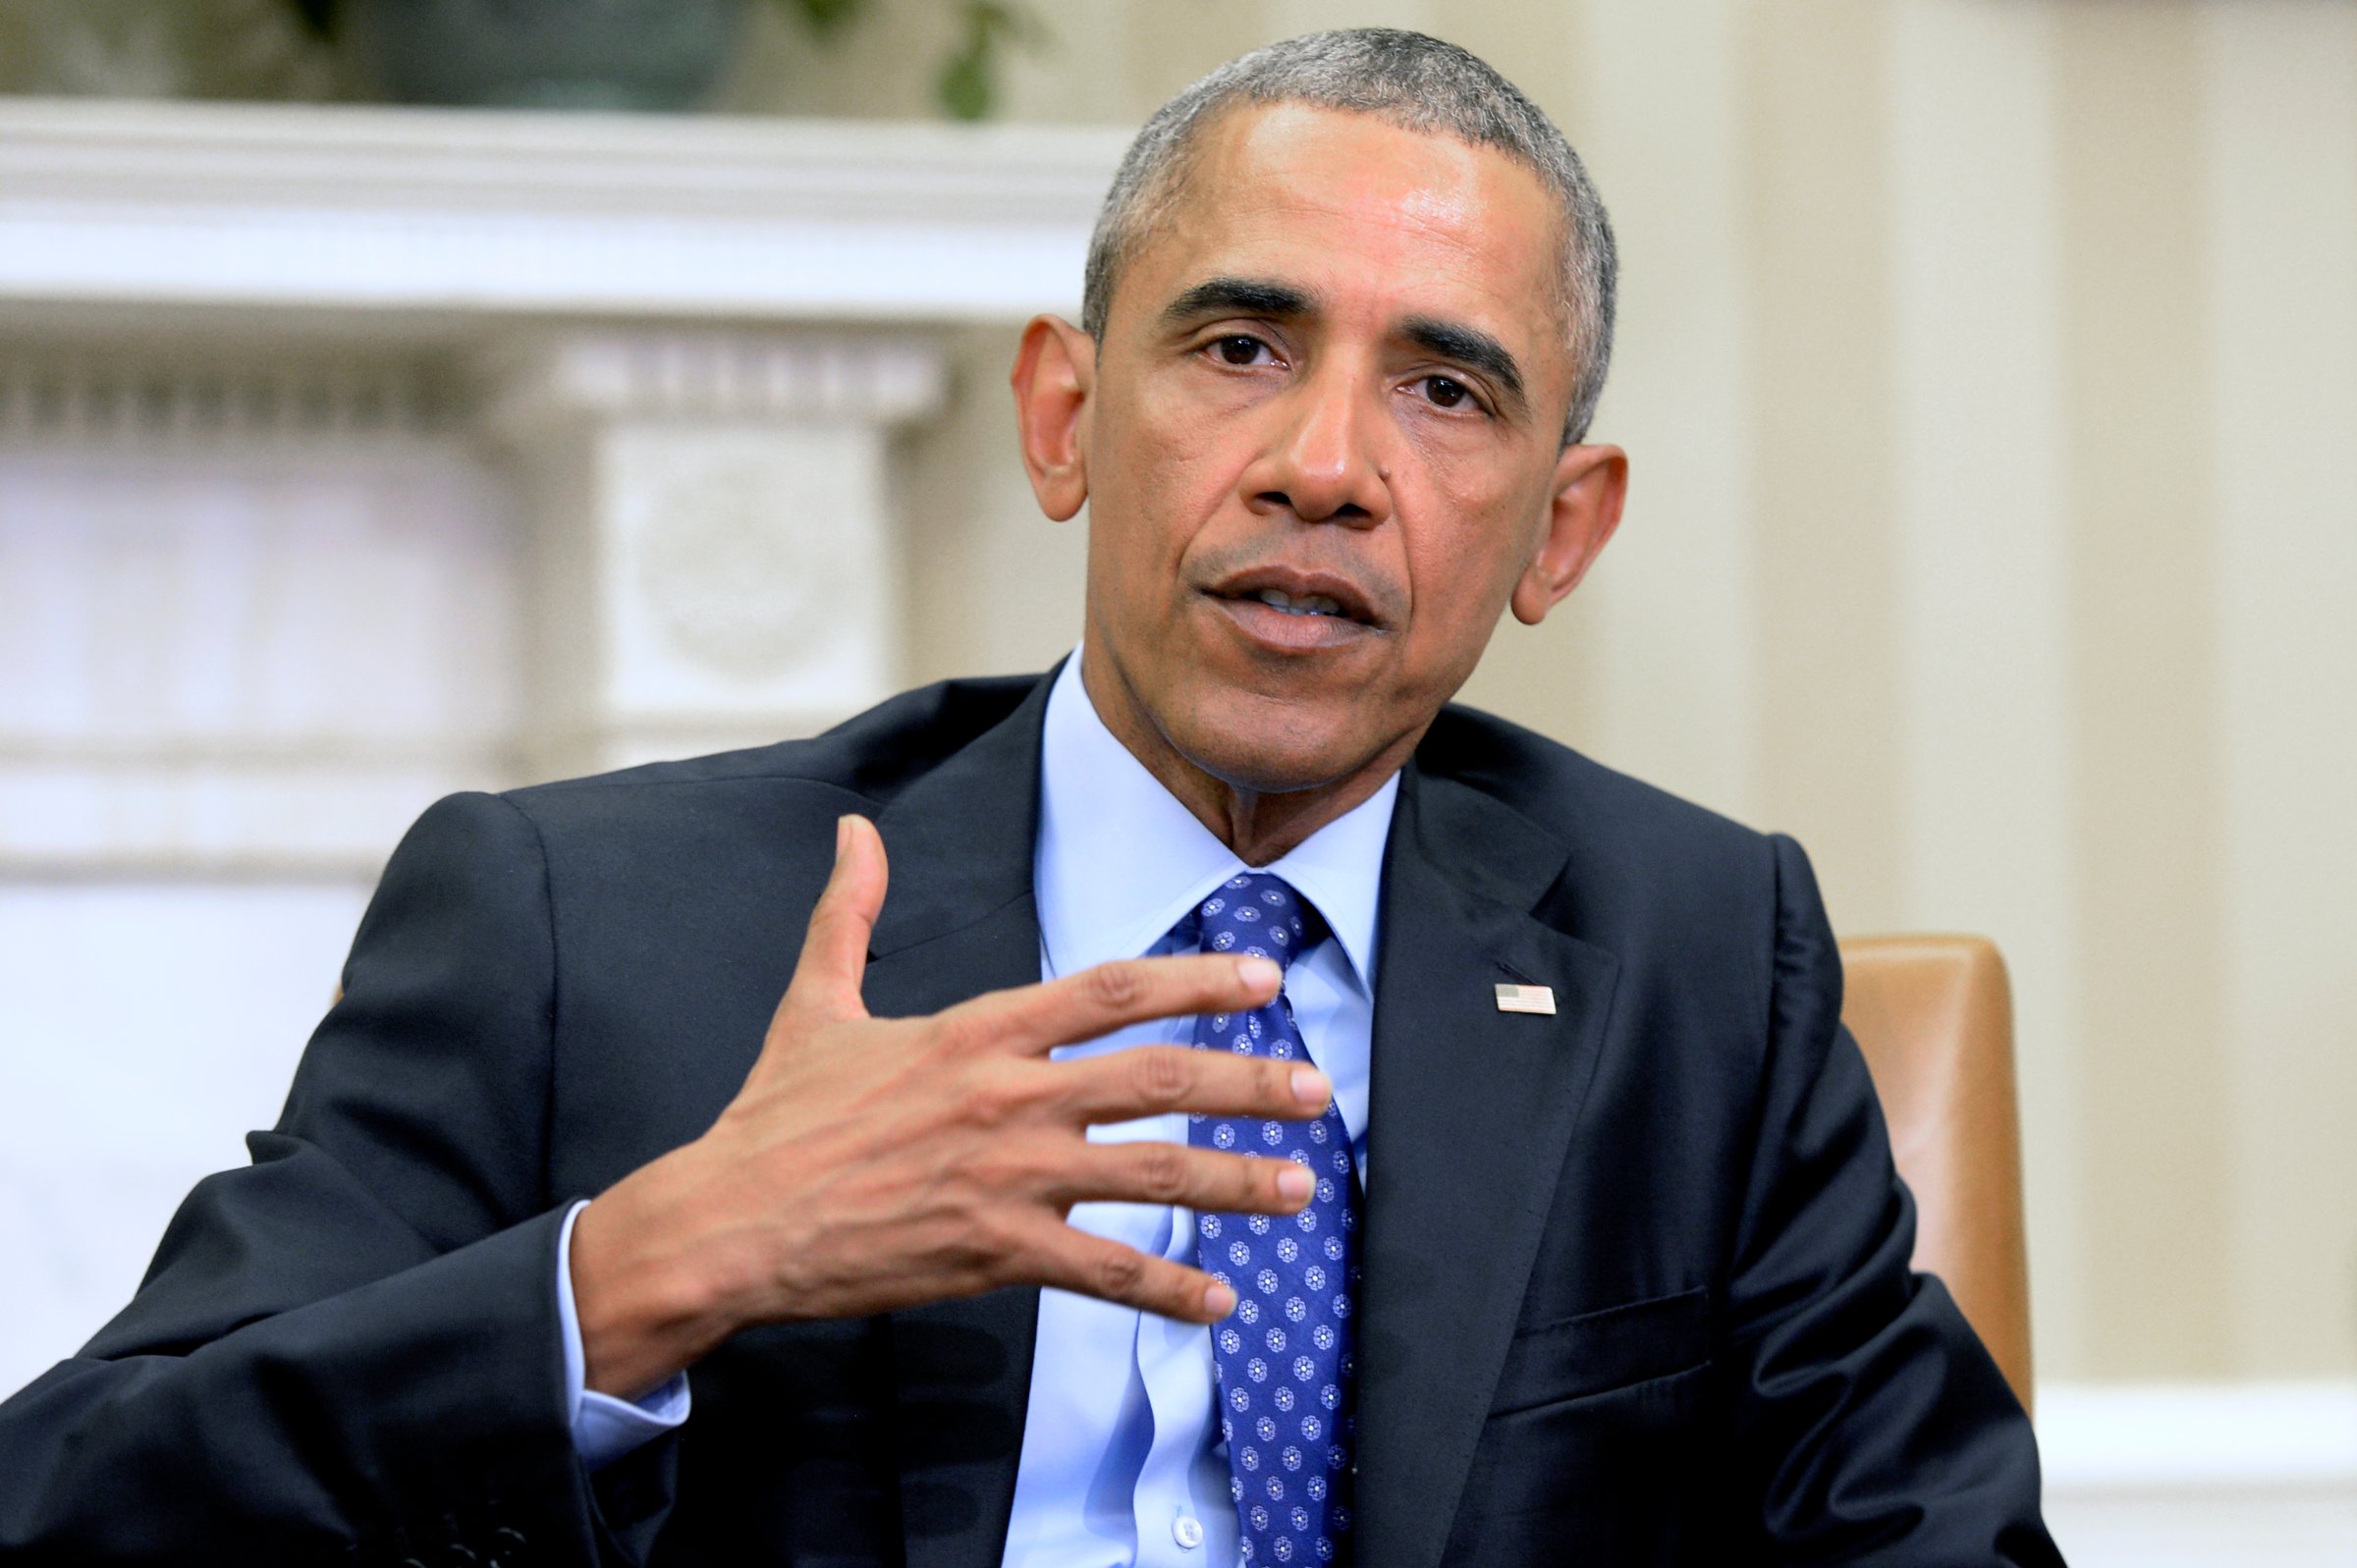 Obama remarks on gun violence